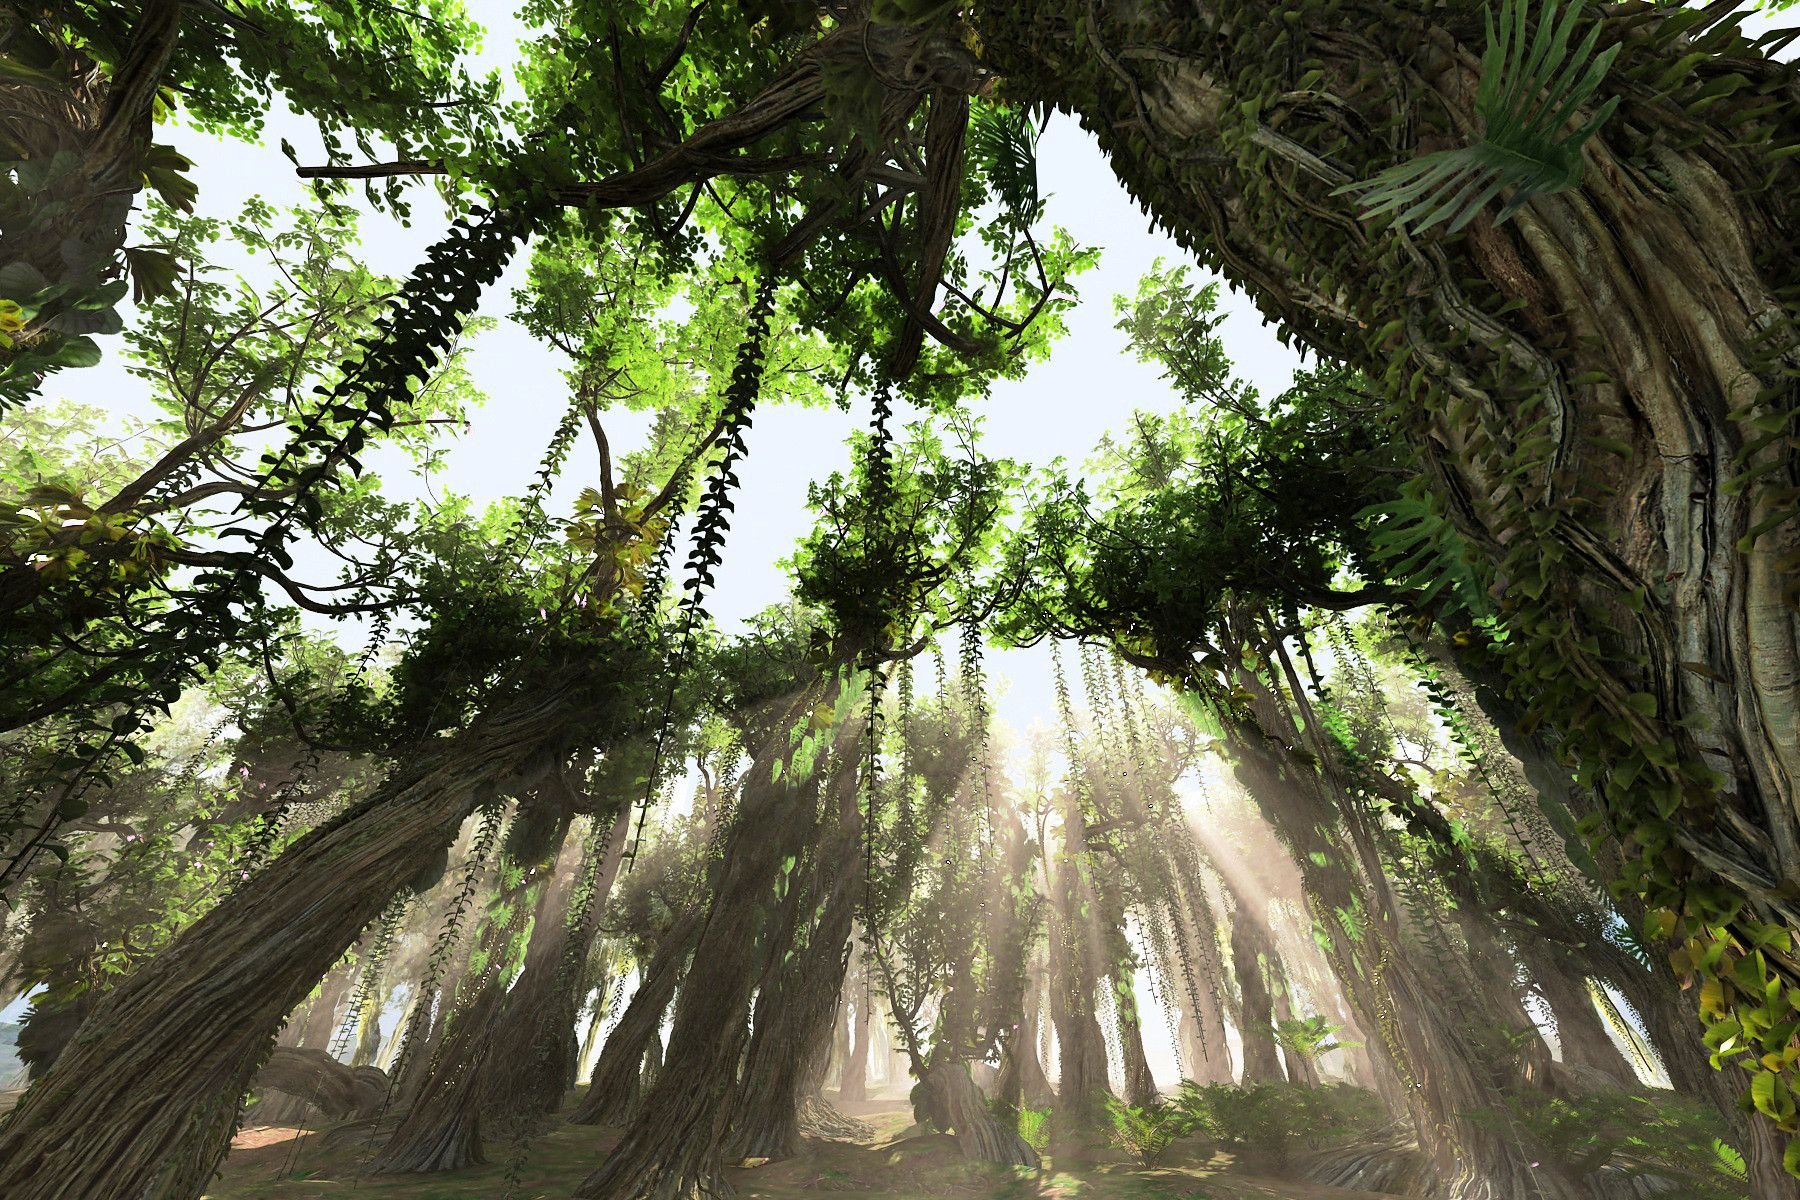 Джангл фото. Лианвидный папоротник. Джунгли 3d Max. Джунгли деревья референс. Тропические леса Индии лианы.